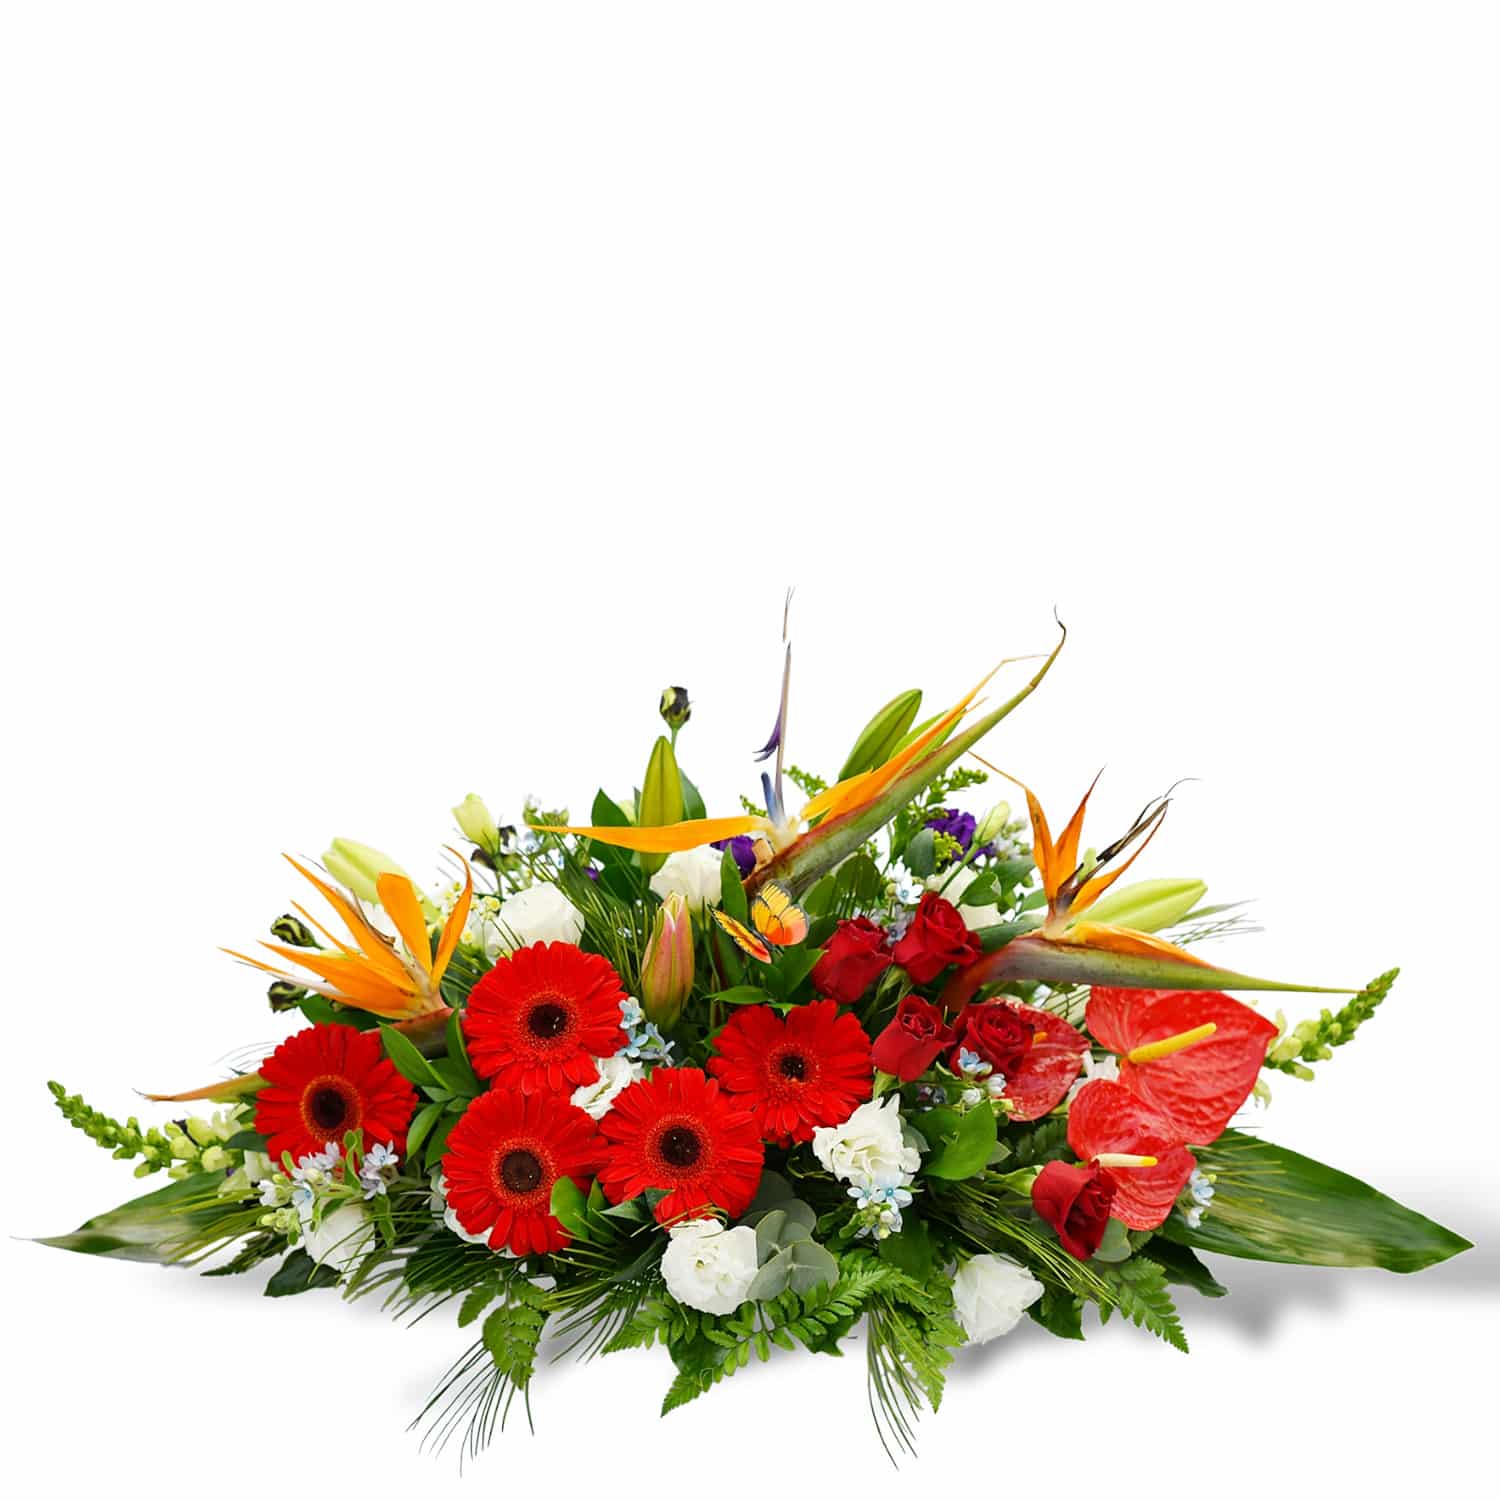 משלוח פרחים בראשון לציון - הסחלב: חנות פרחים לכל אירוע - ציפור גן העדן הפראי